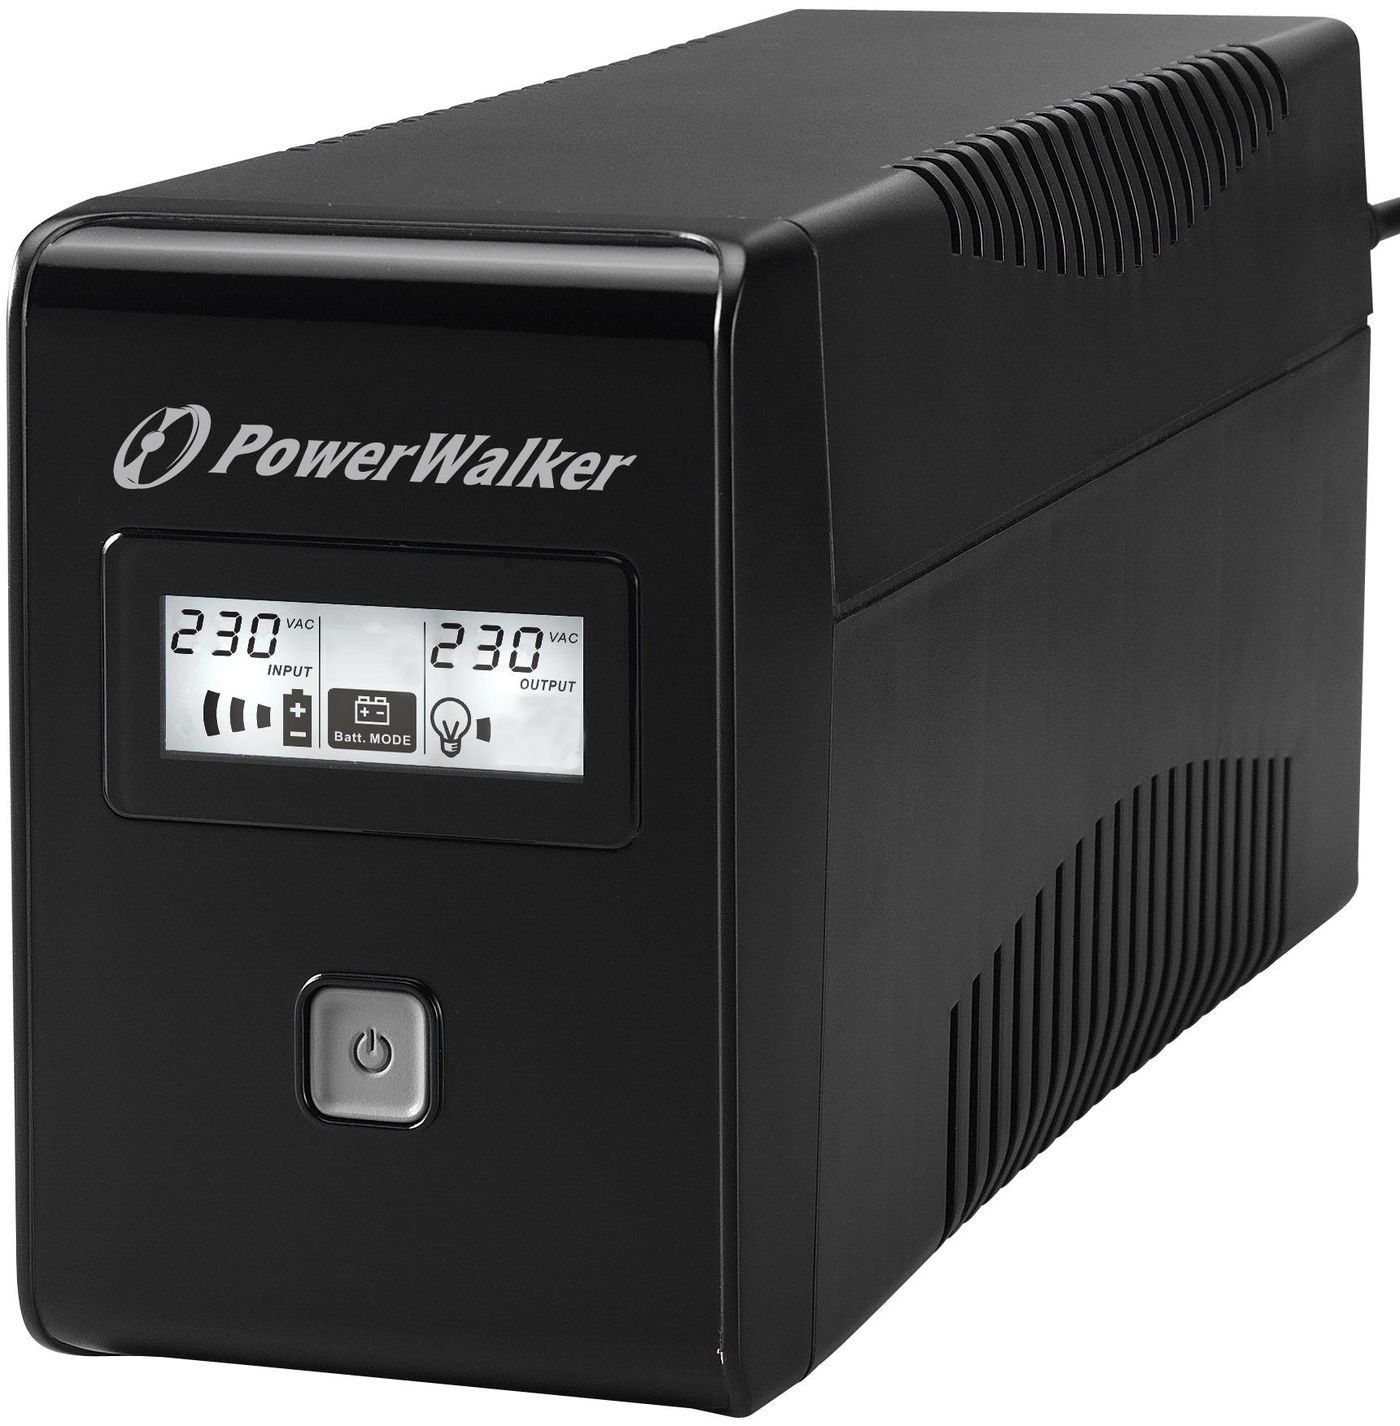 PowerWalker 10120017 VI 850 LCD UPS 850VA480W 